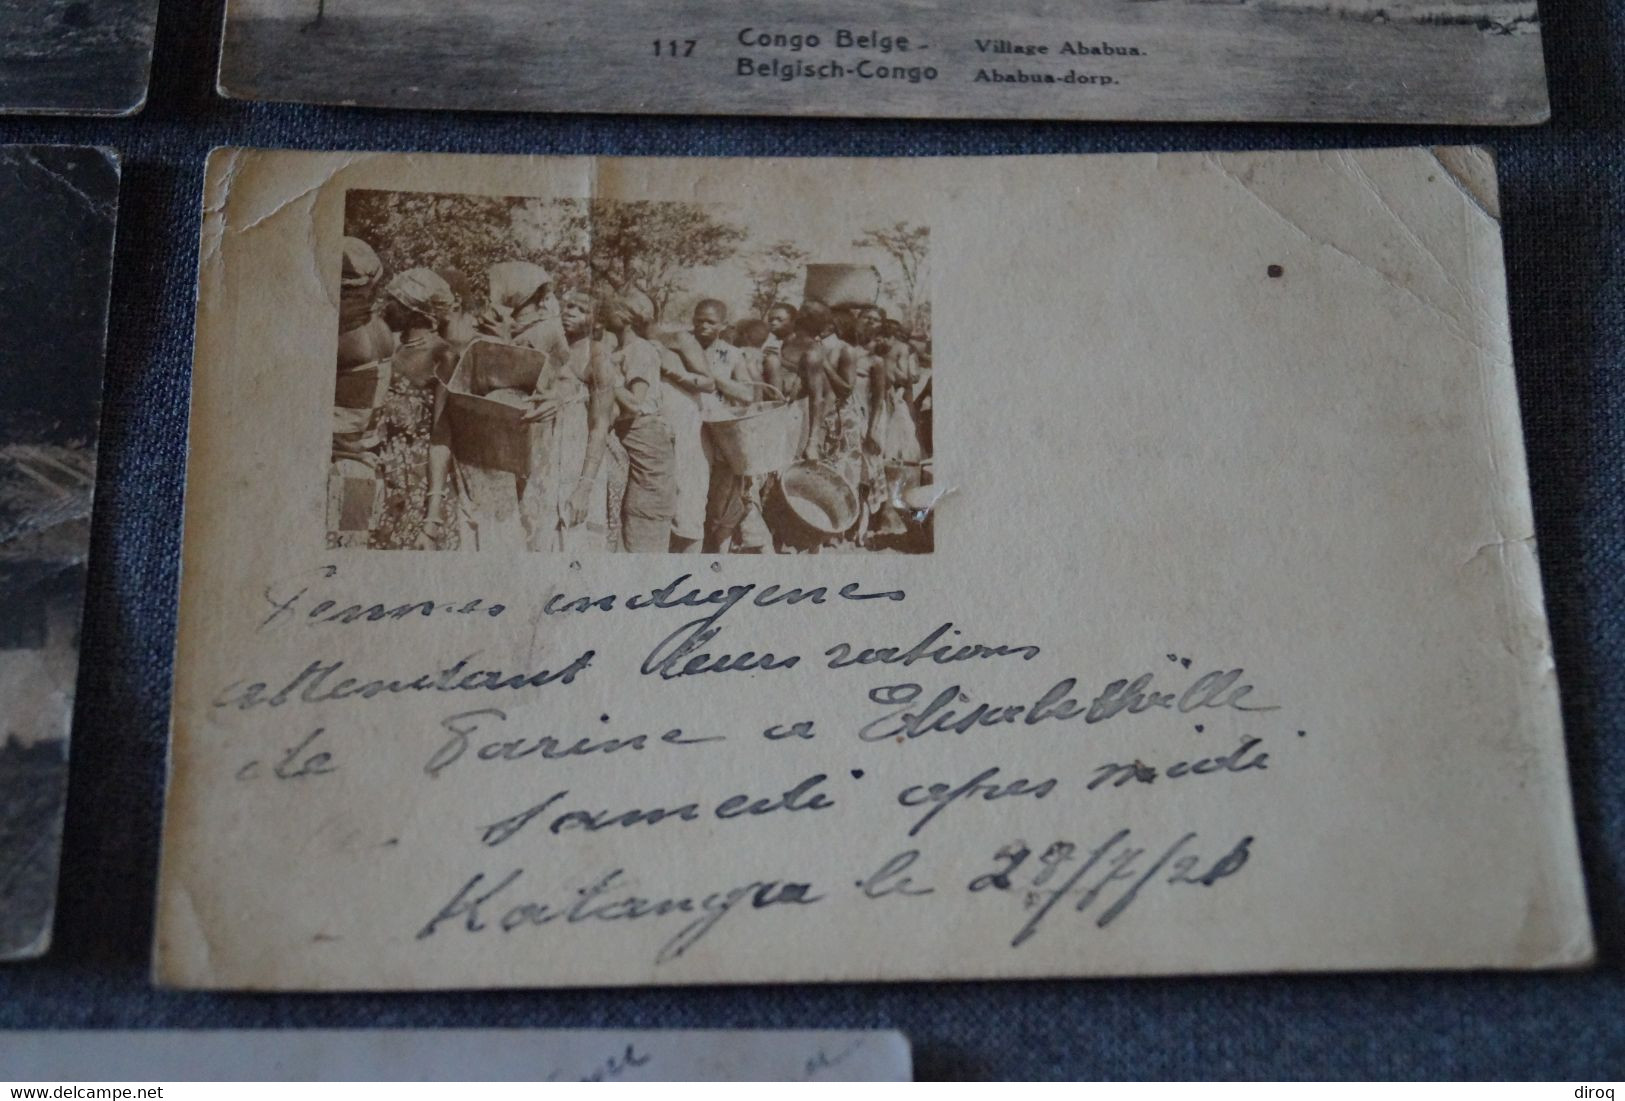 lot de 5 anciennes cartes postales Congo Belge, Elisabethville